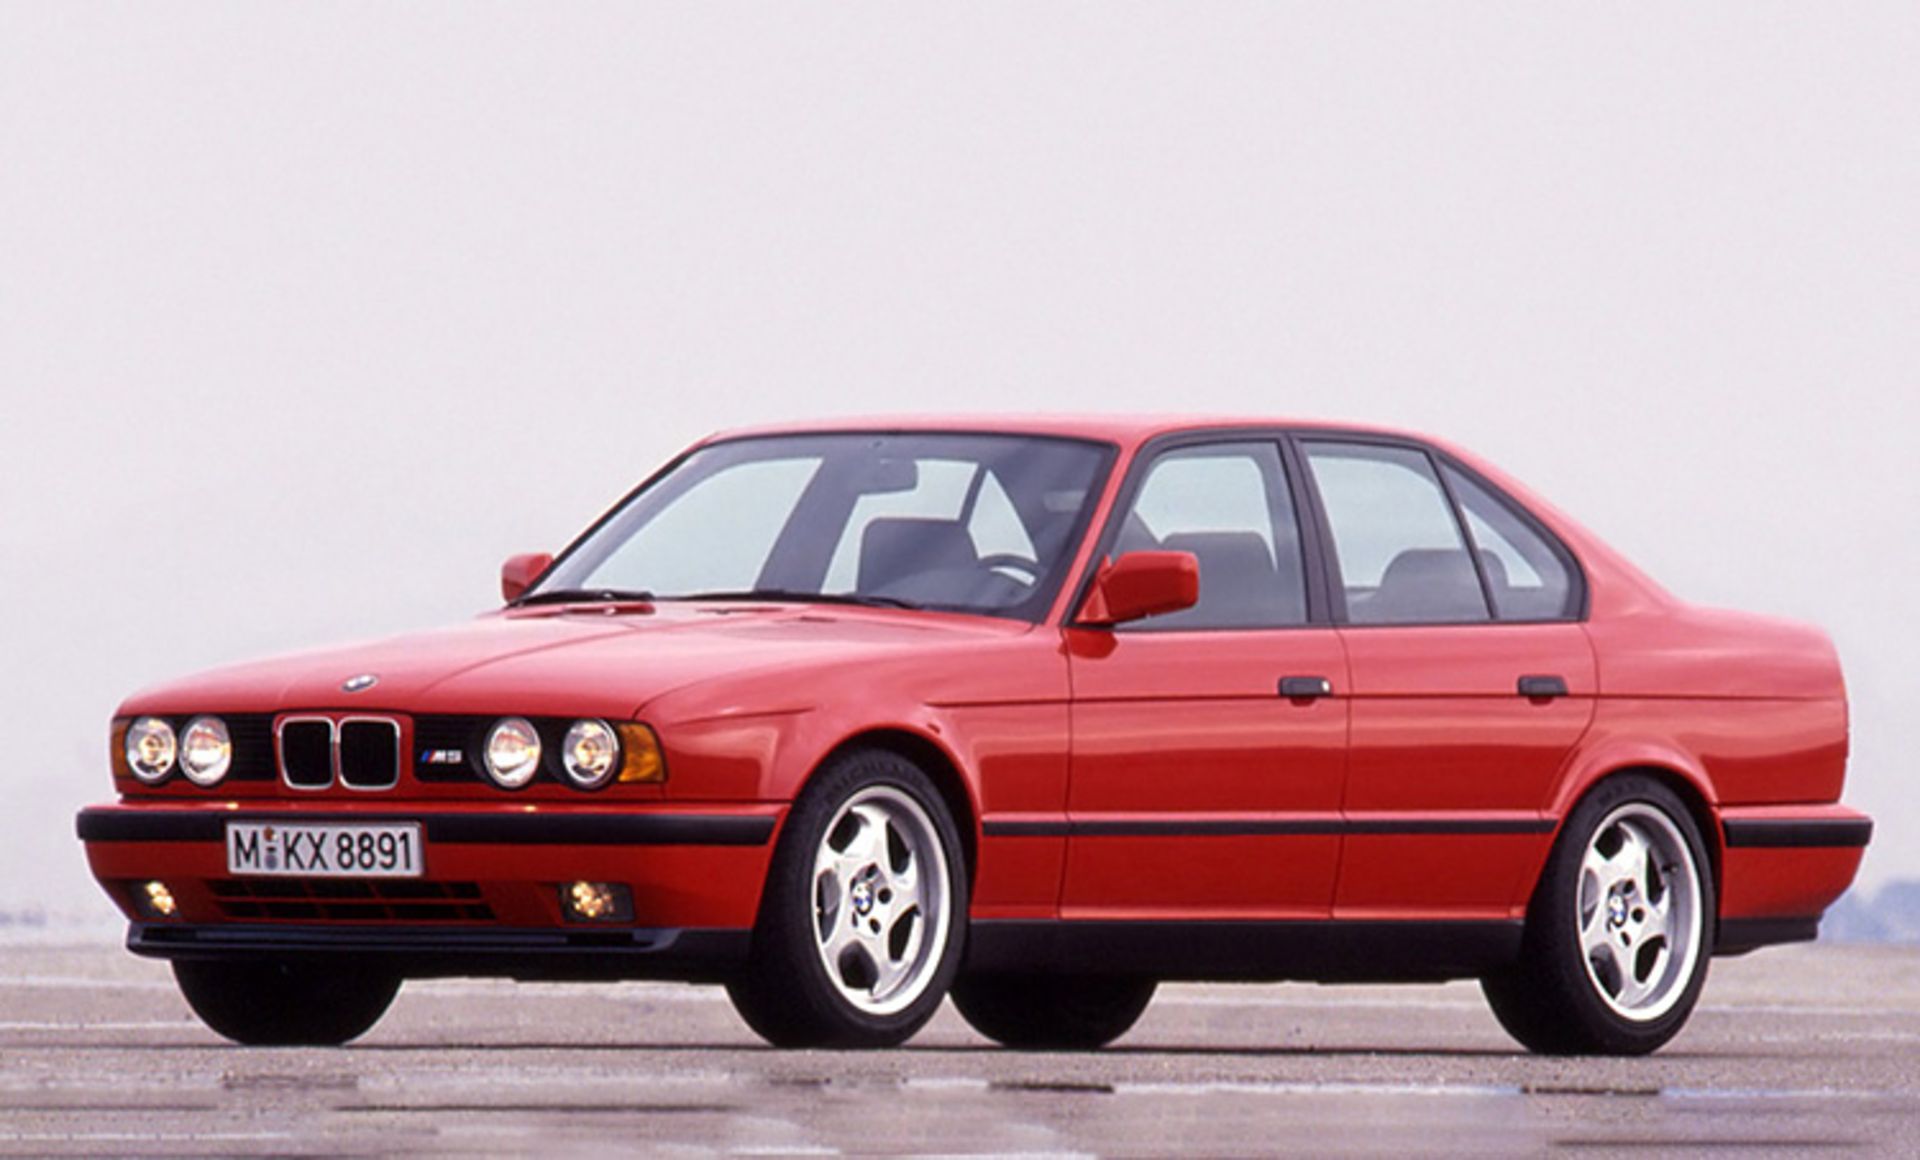 مرجع متخصصين ايران BMW M5 1993